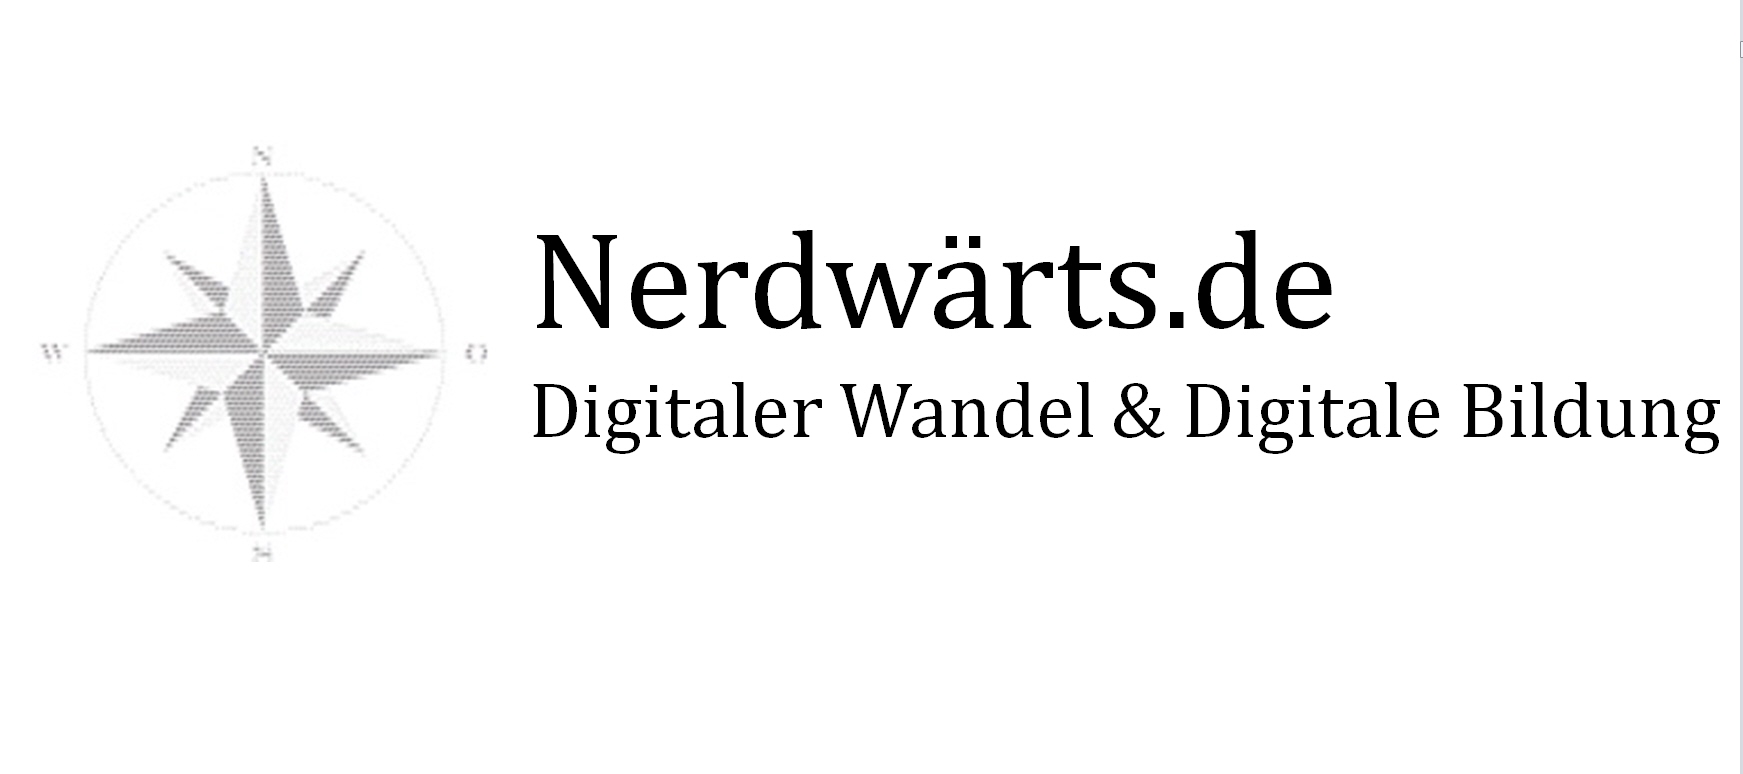 (c) Nerdwaerts.de